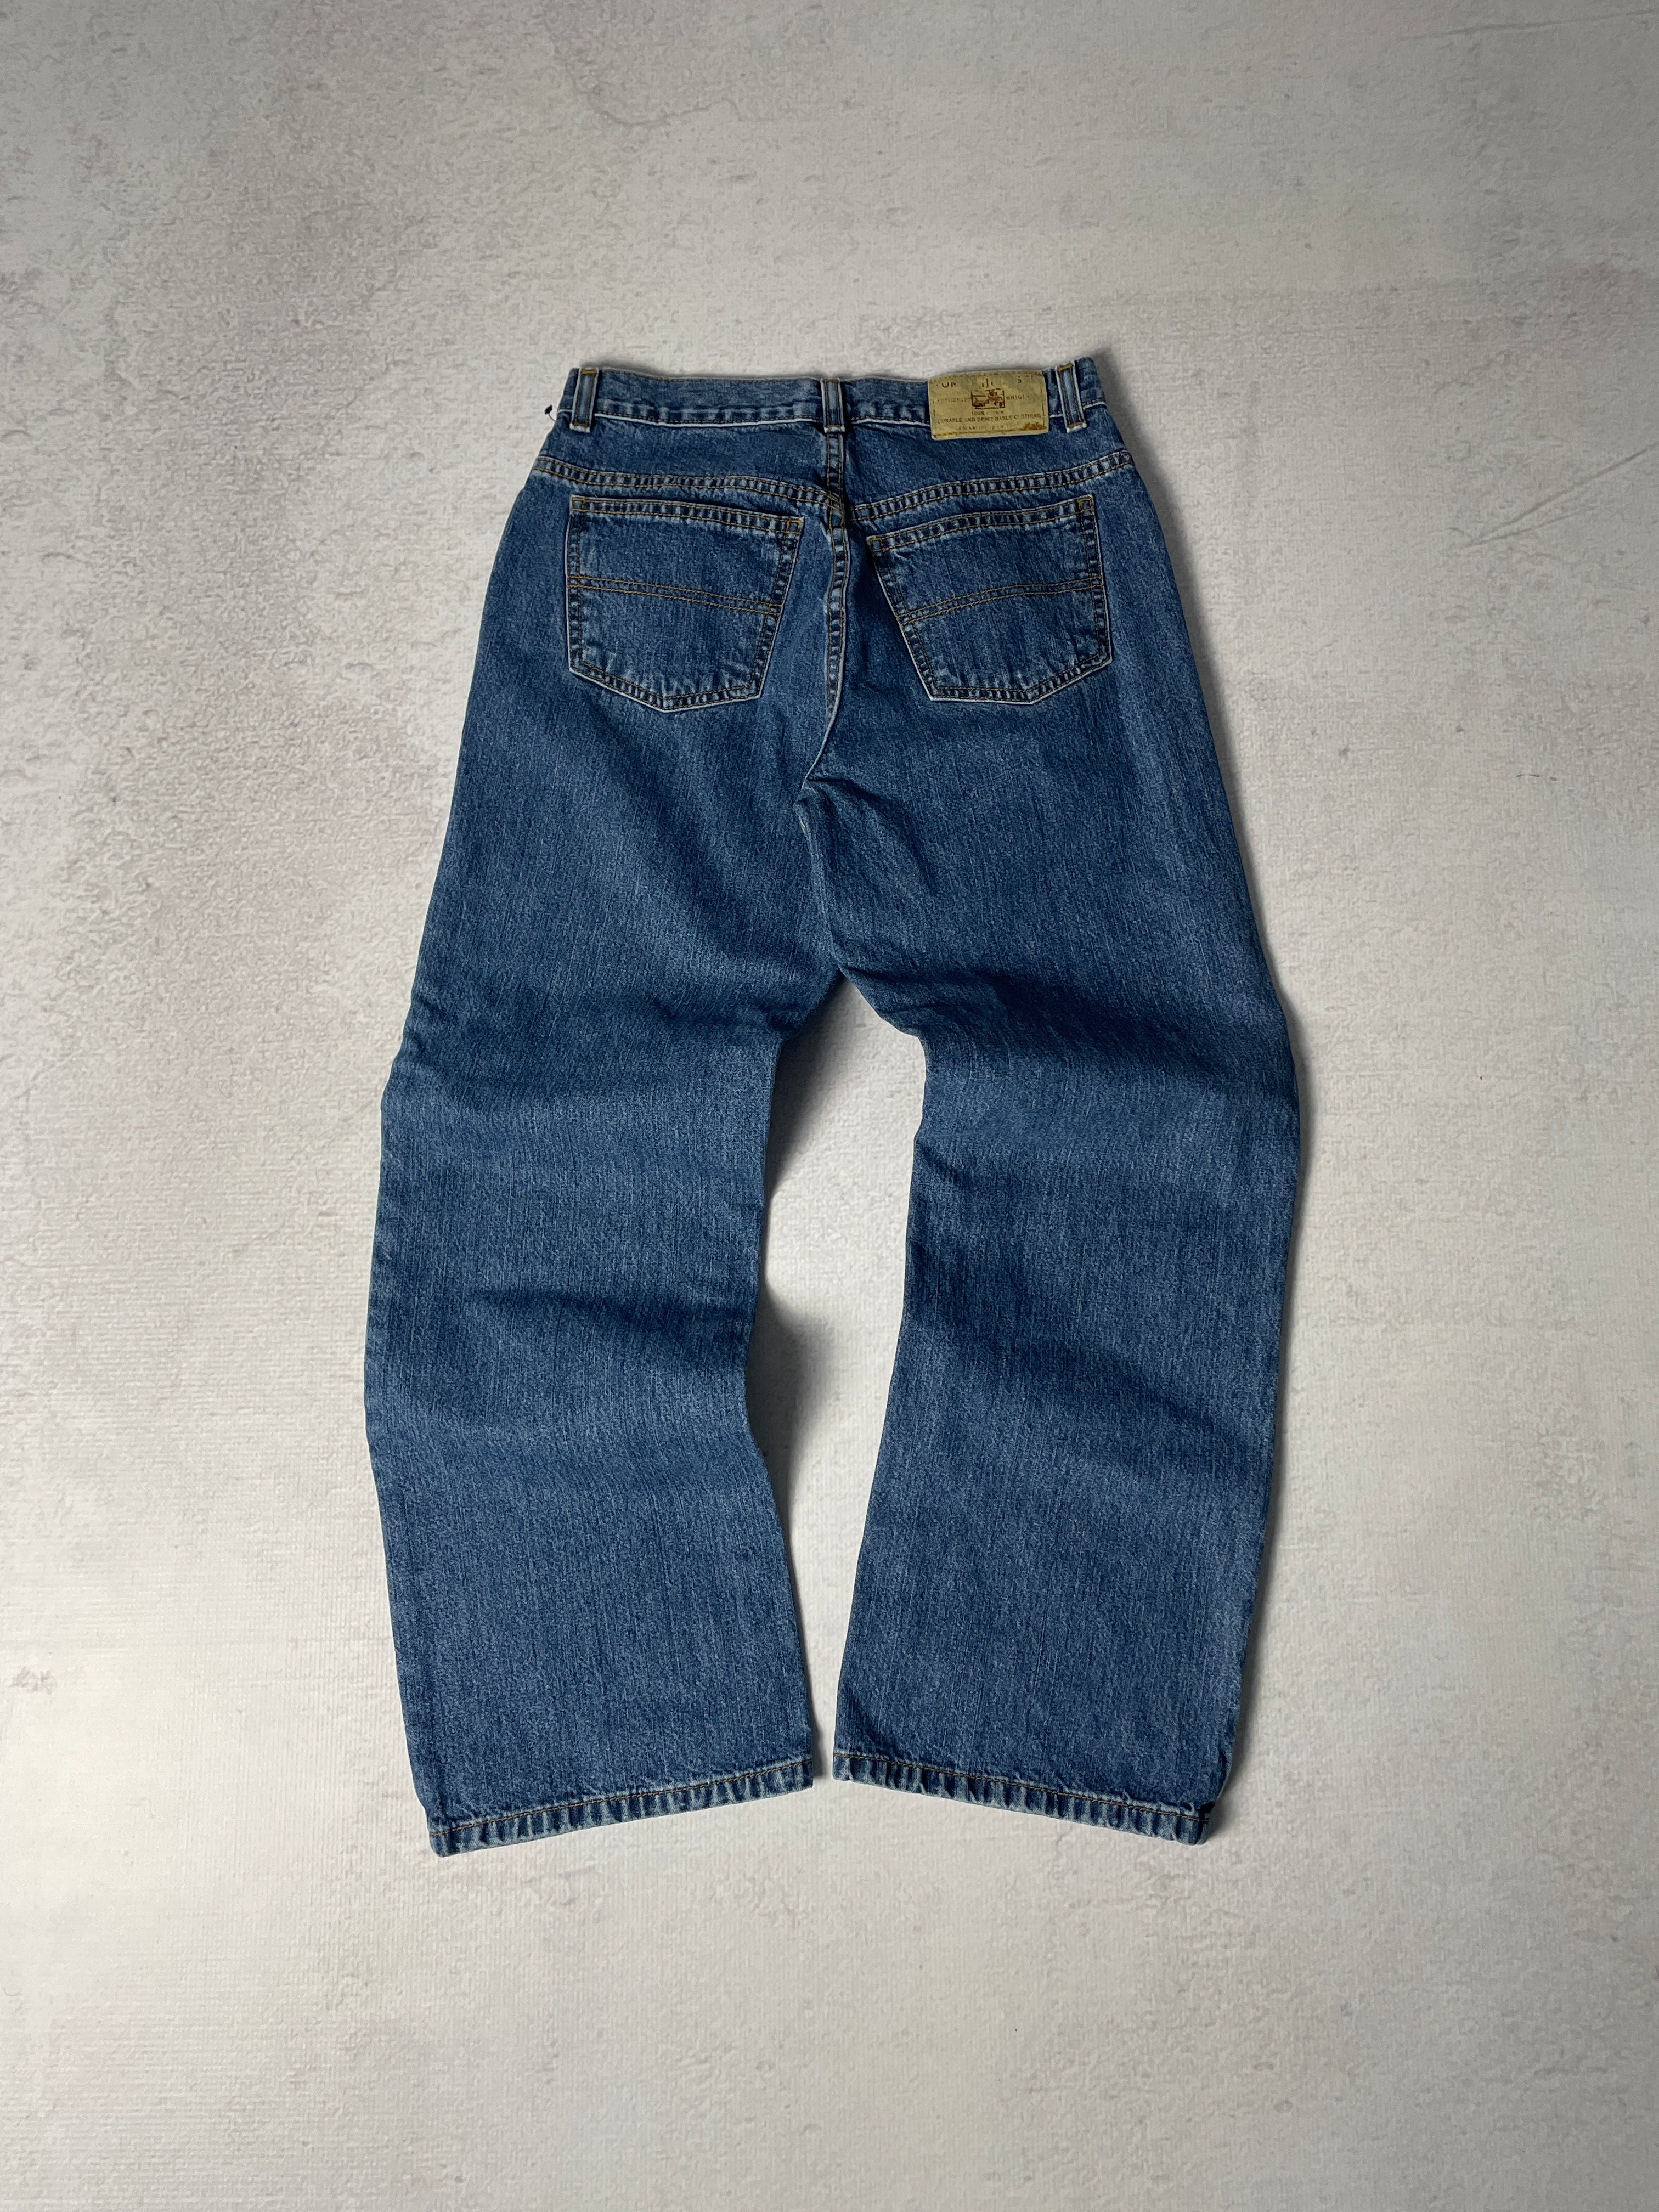 Vintage Tommy Hilfiger Jeans - Women's 24Wx28L